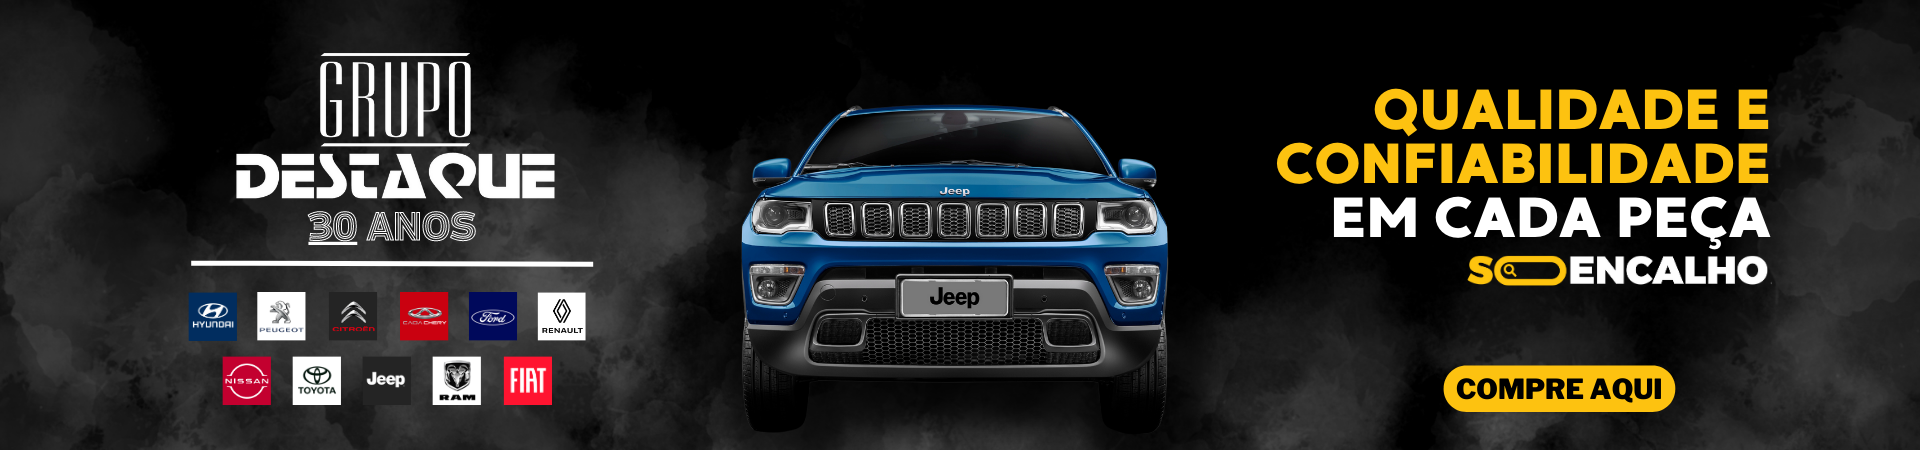 Banner com um carro da marca Jeep, fundo preto com fumaça e escritas "qualidade e confiabilidade em cada peça", logo da Só Encalho, logo do Grupo Destaque e das marcas que representam e botão "Compre Aqui"